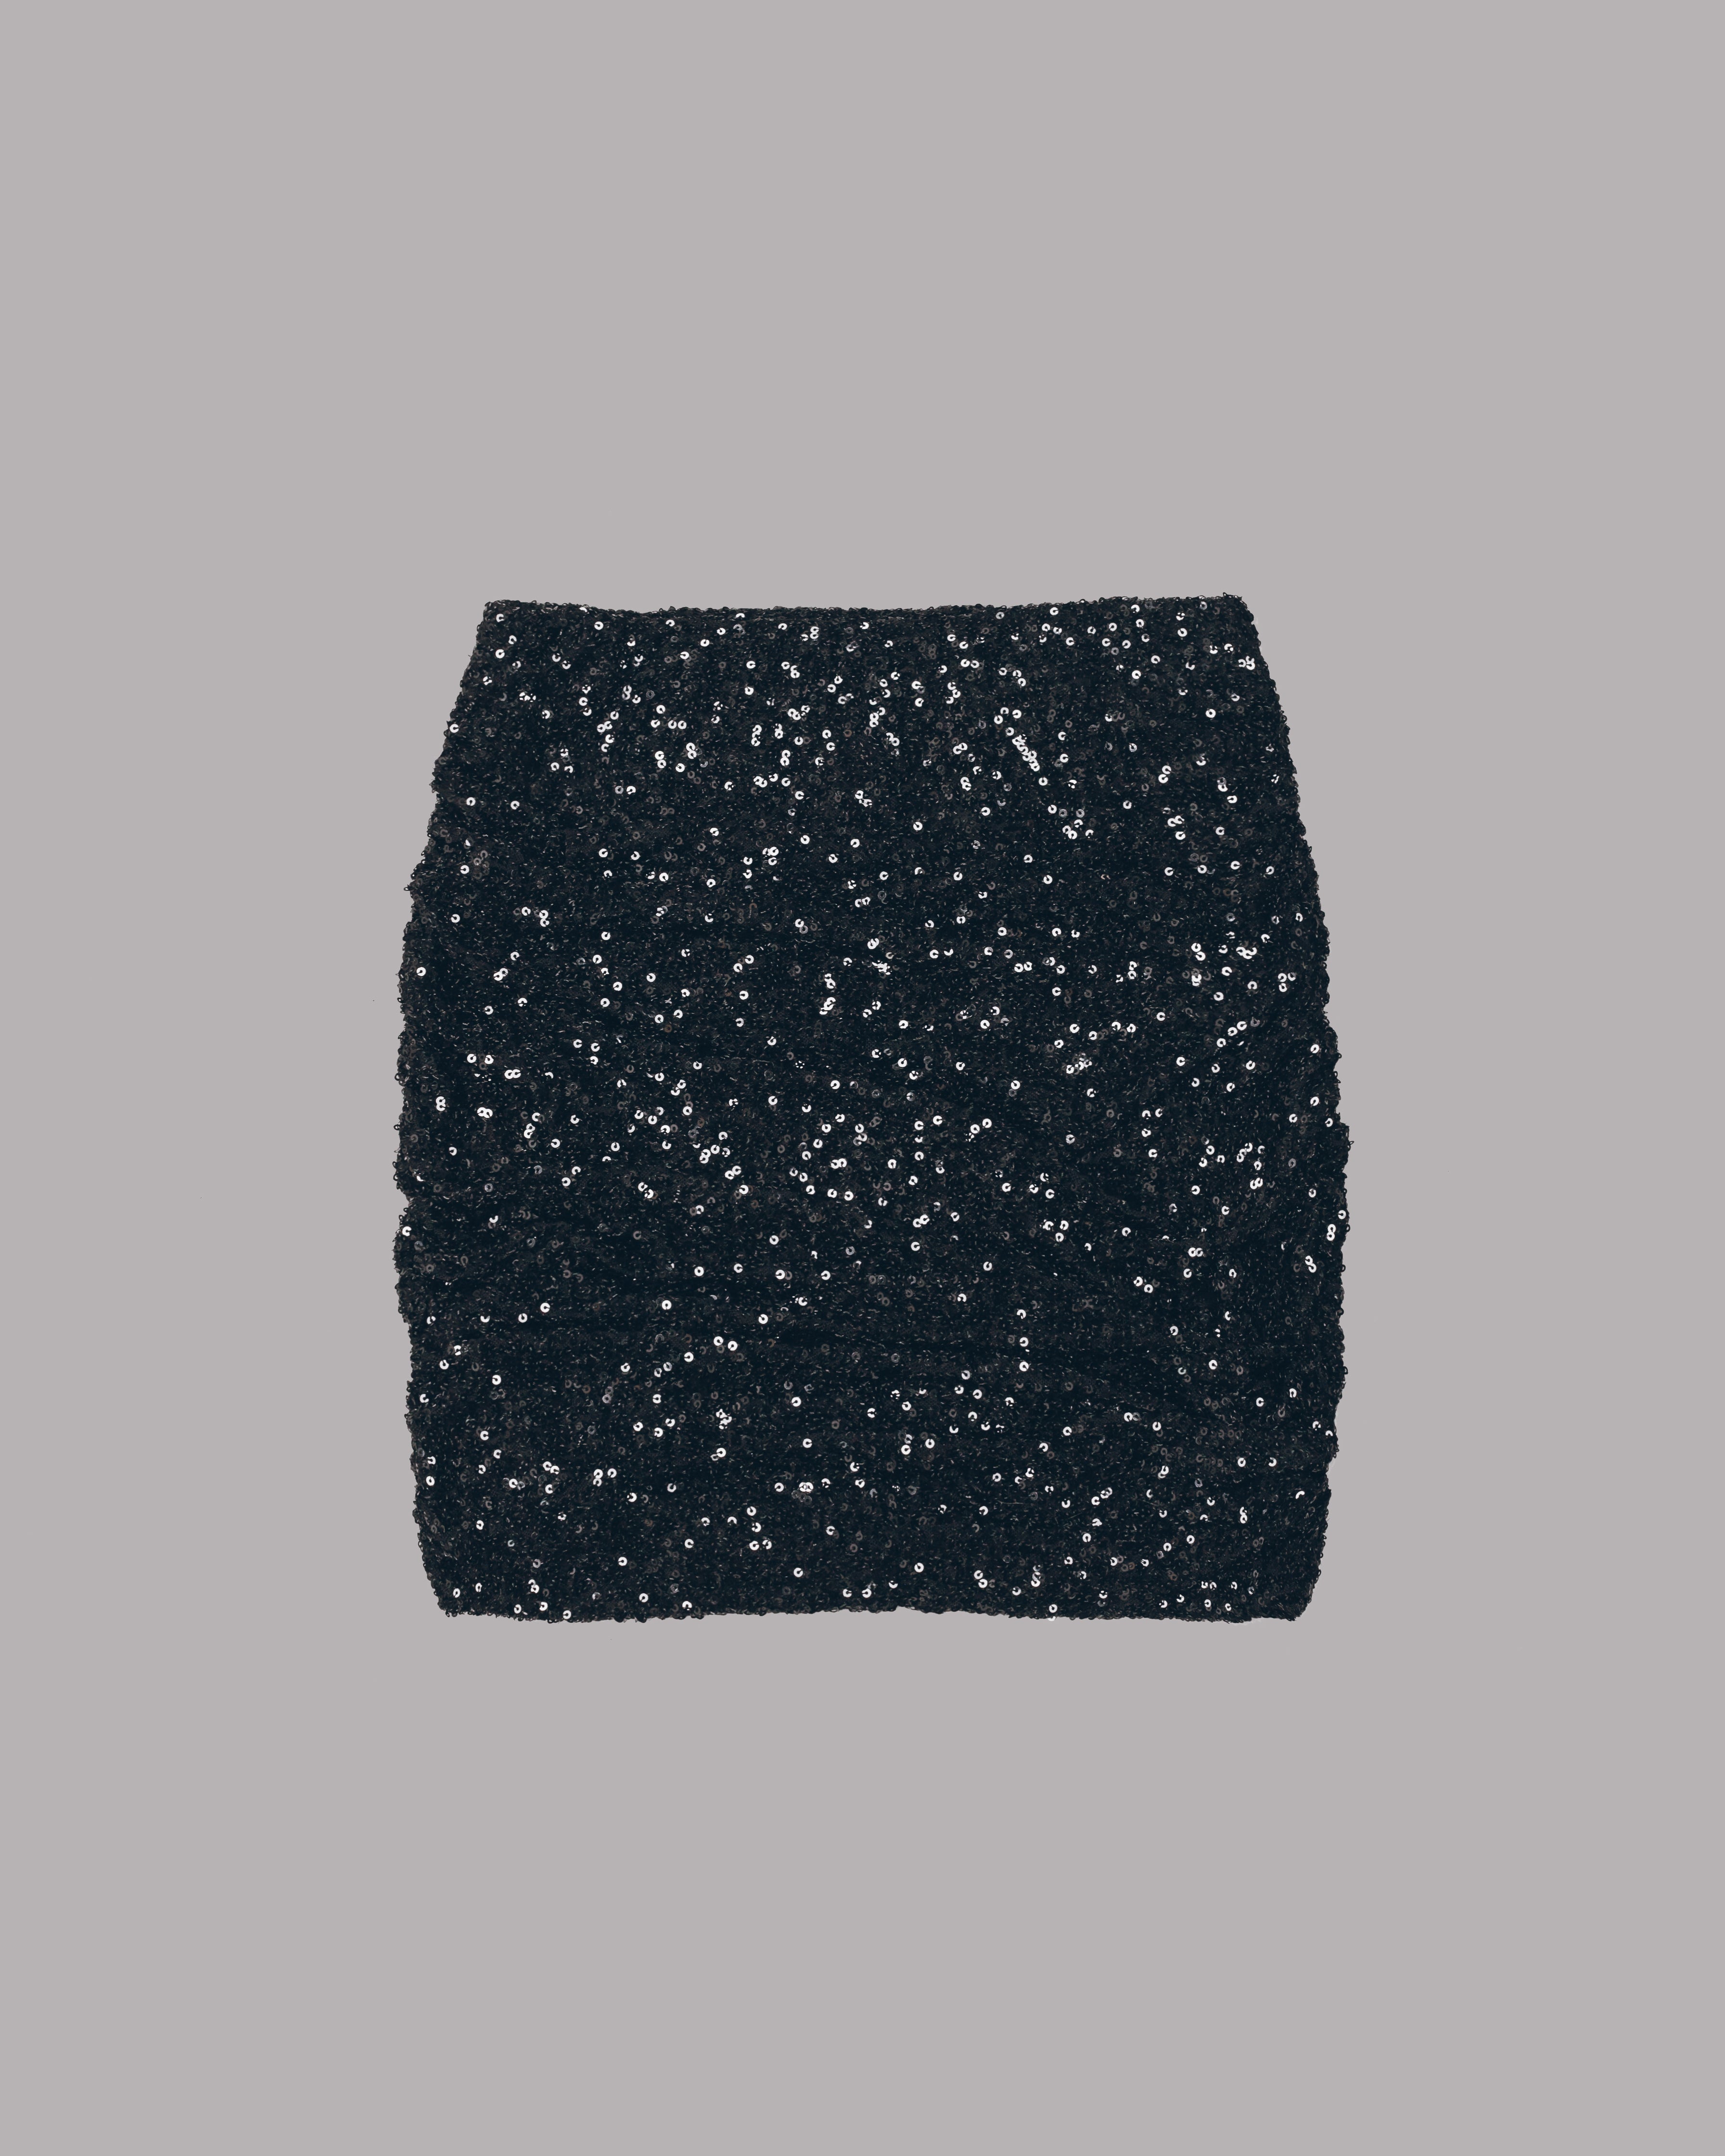 The Black Sequin Skirt